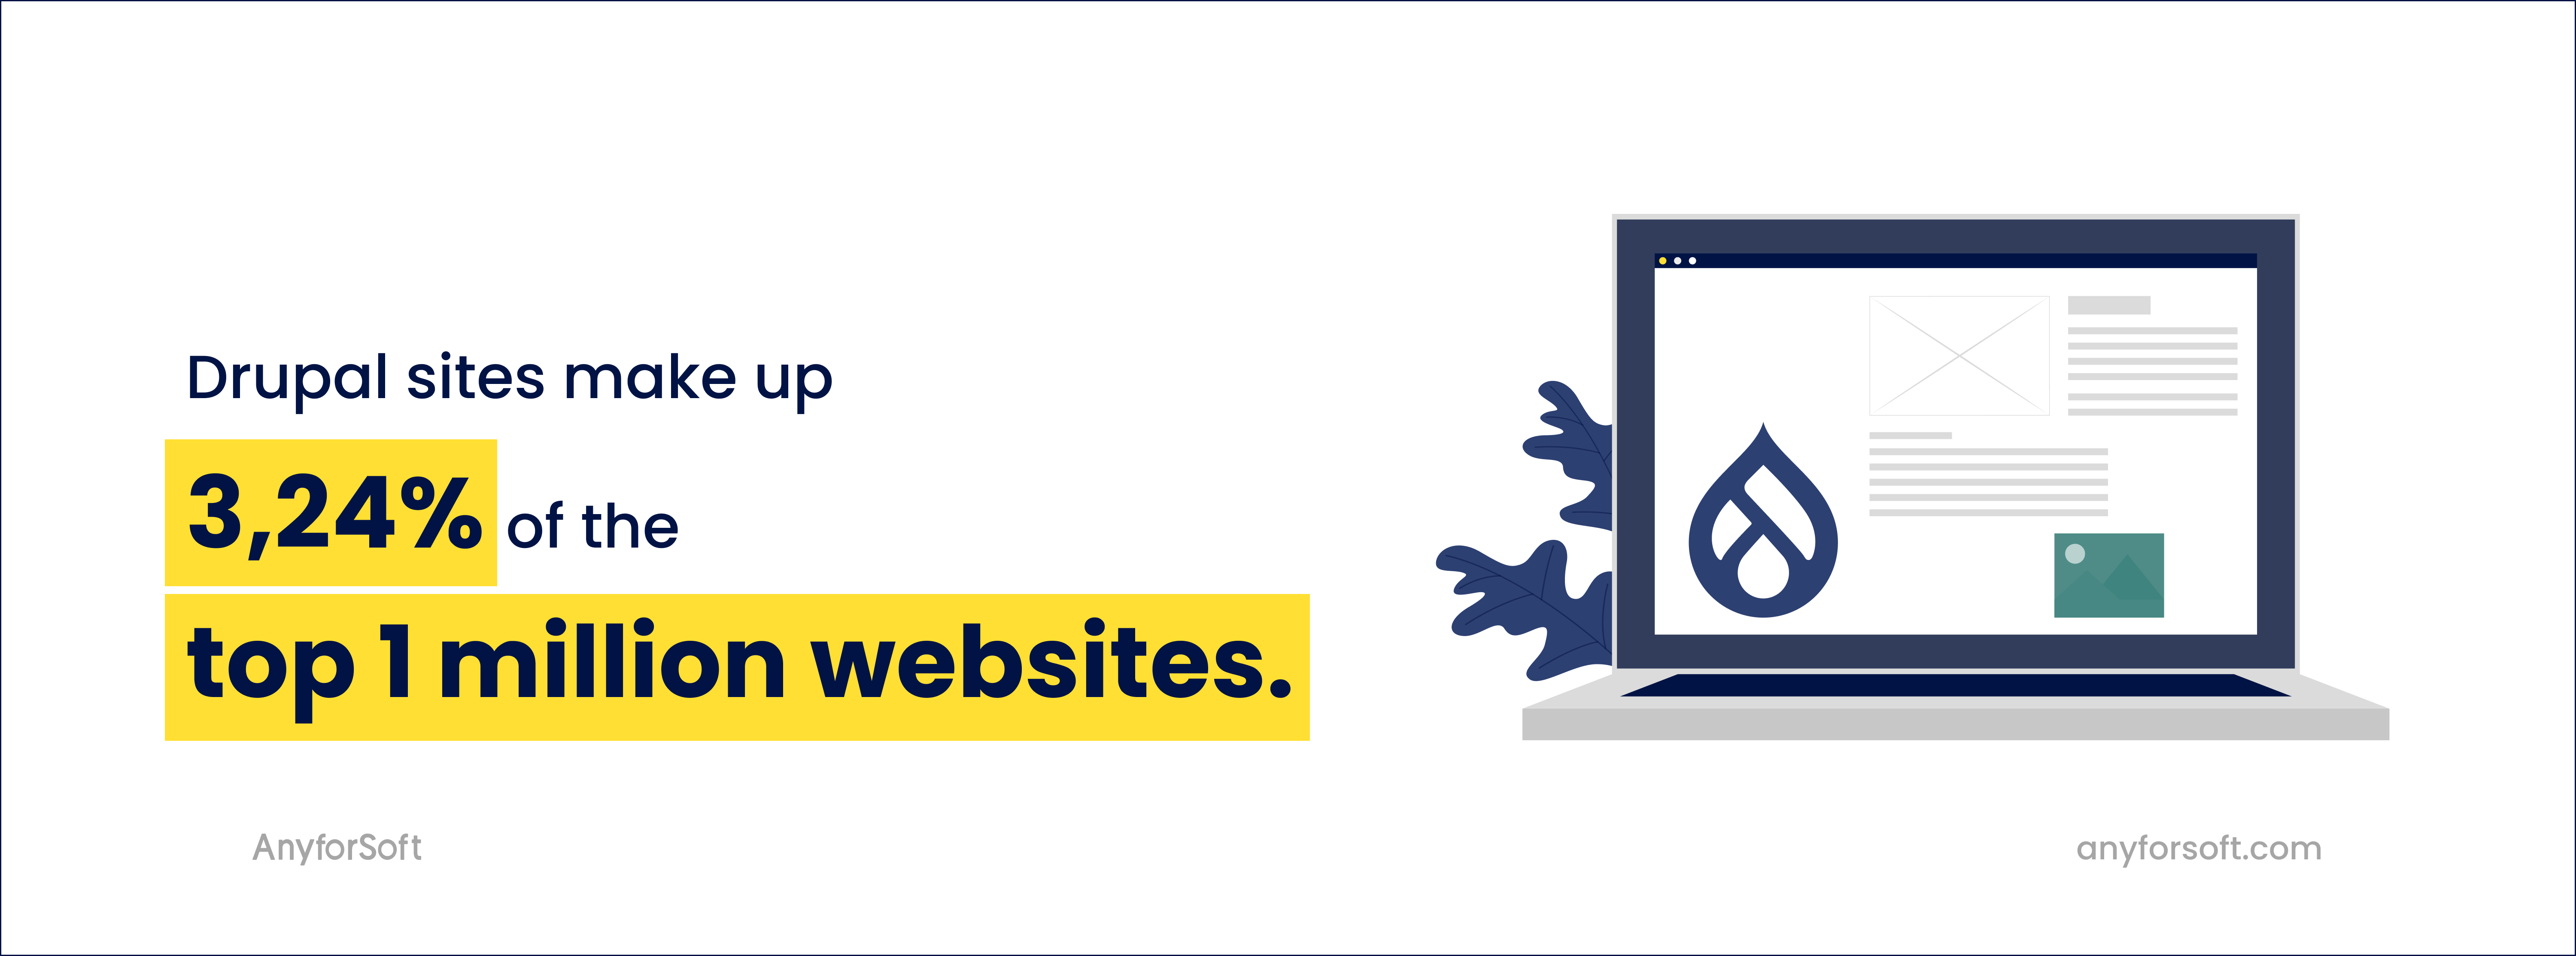 Drupal sites make up 3,24% of the top 1 million websites.